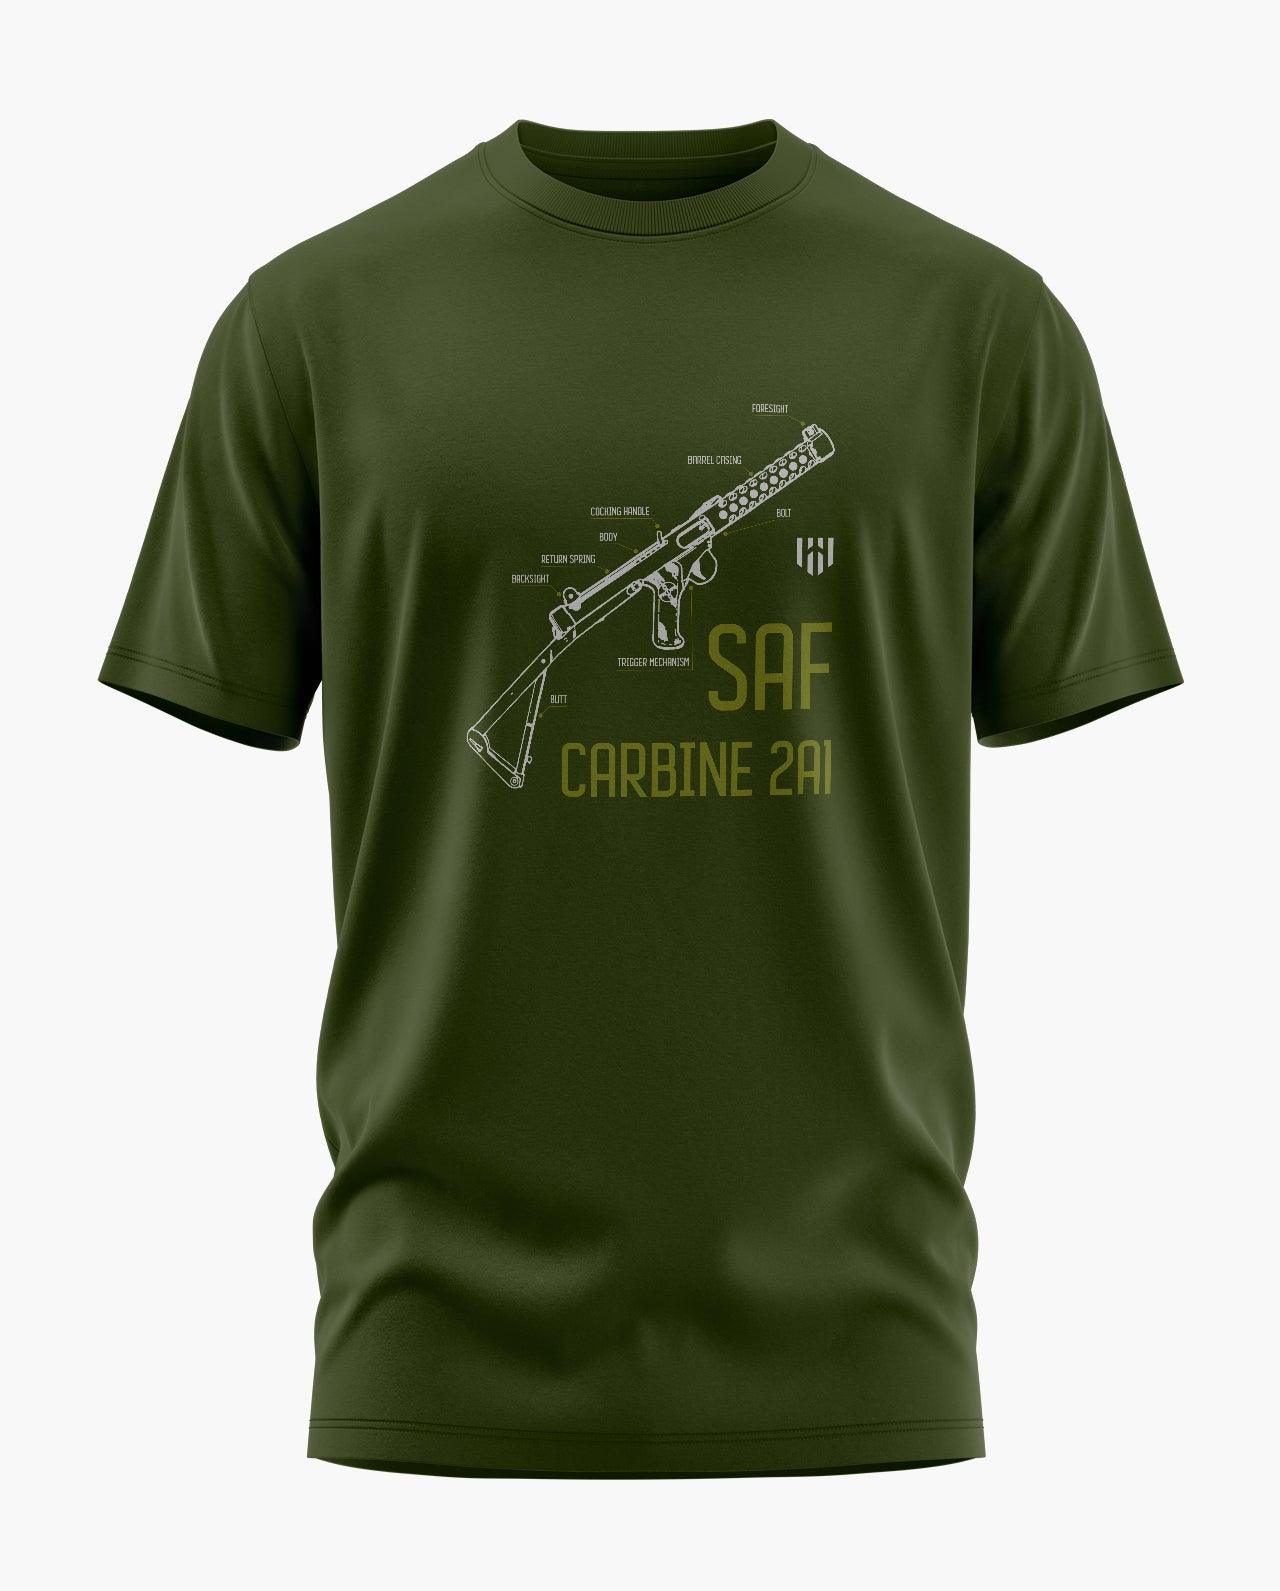 SAF CARBINE 2A1 T-Shirt - Aero Armour